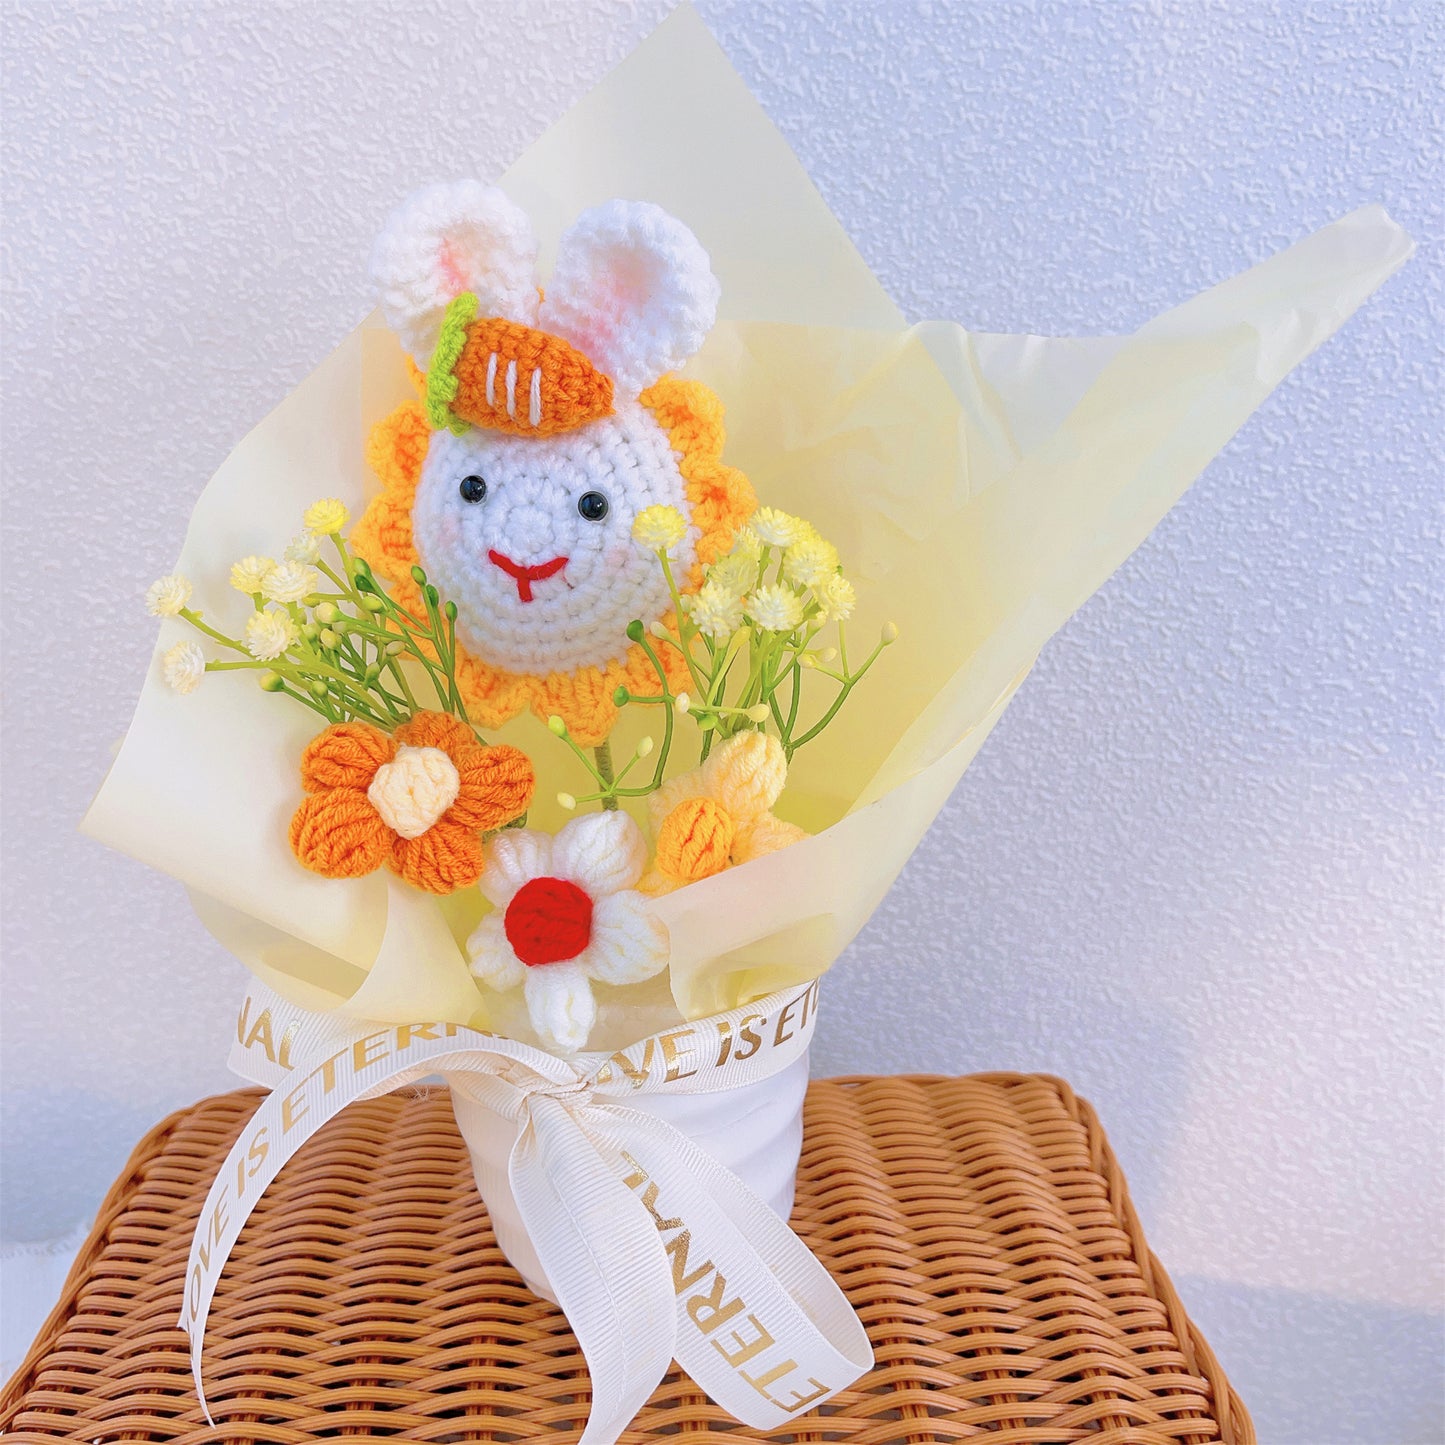 Ensemble de pots de fleurs tricotés fabriqués à la main : tournesols vibrants et boules de houx délicates - idéal pour la décoration intérieure, les cadeaux et les occasions spéciales